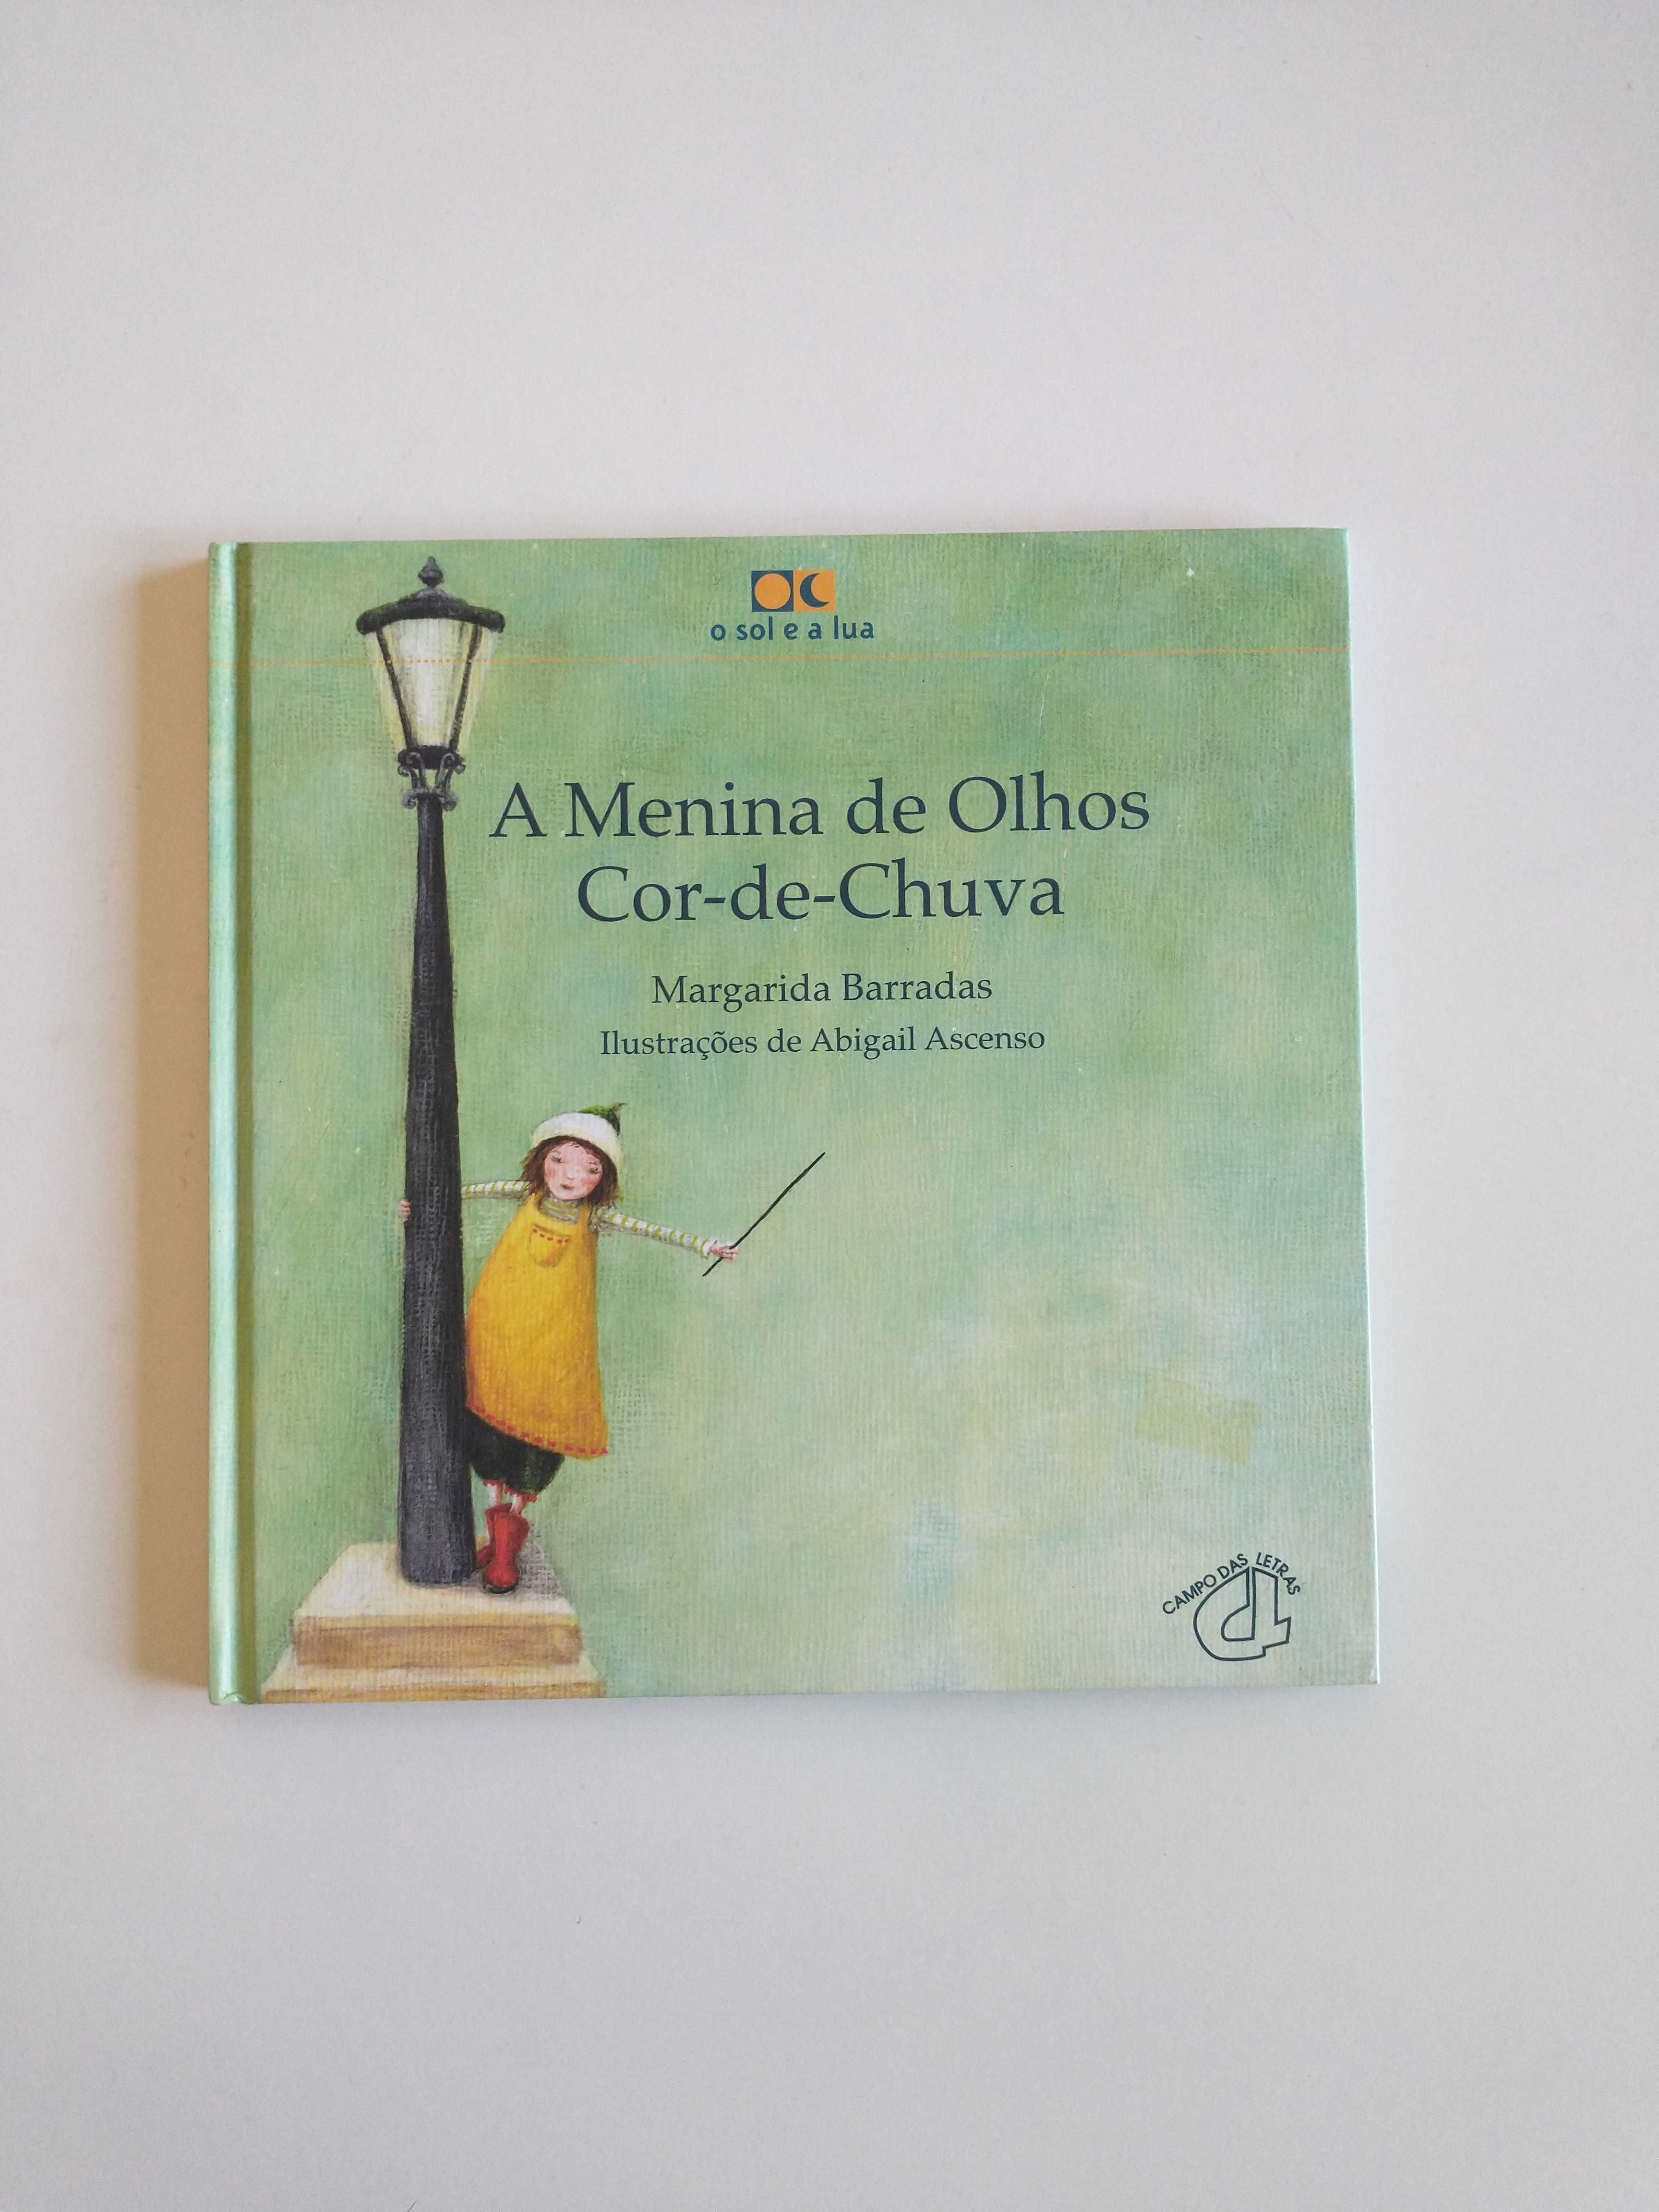 Livro "A Menina com Olhos Cor-deChuva" de Margarida Barradas